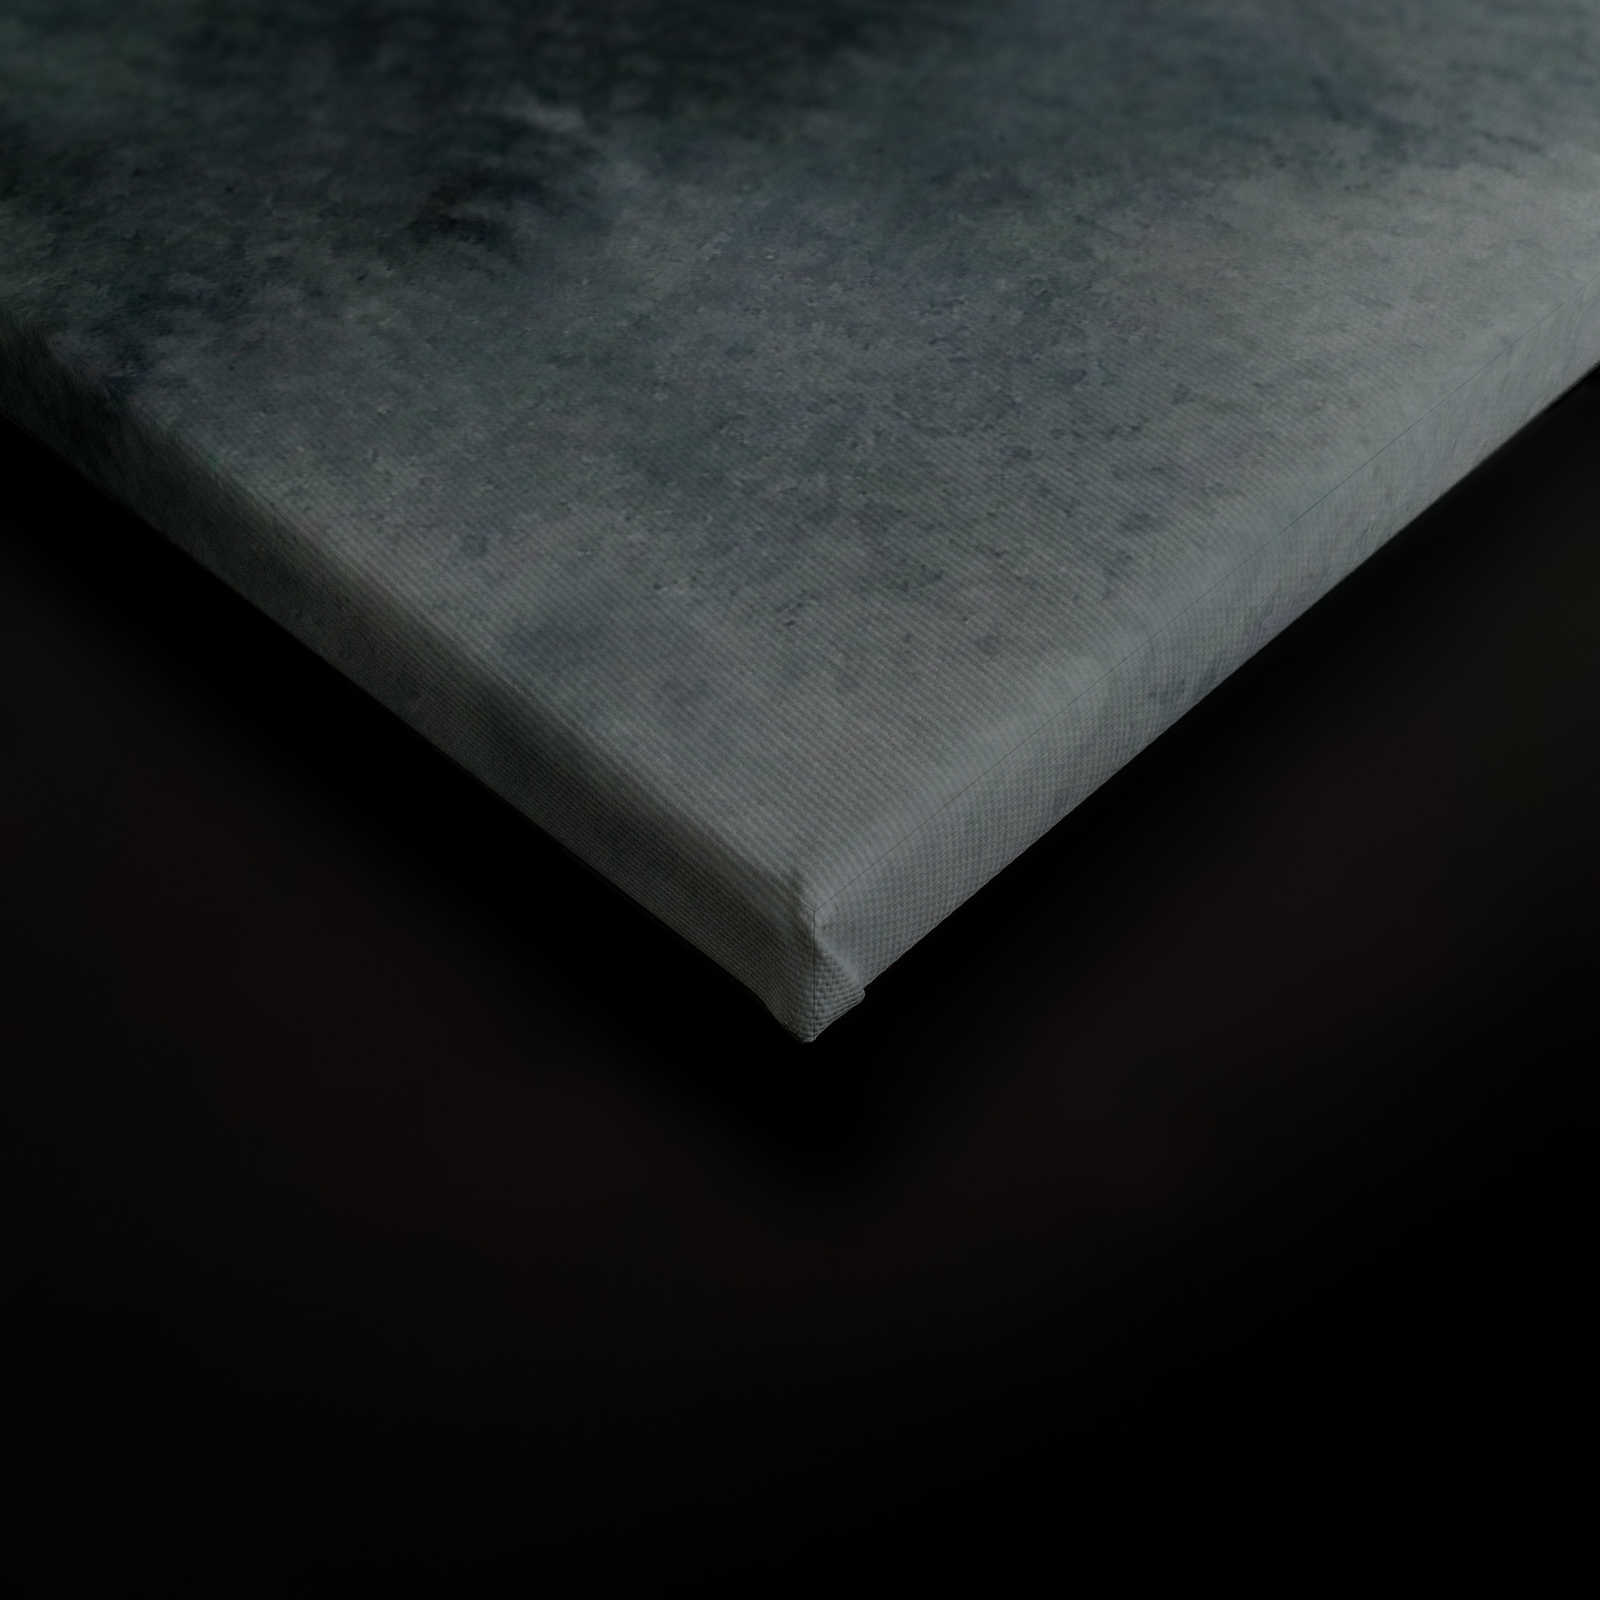             Tela con paesaggio nebbioso in stile pittura | grigio, nero - 0,90 m x 0,60 m
        